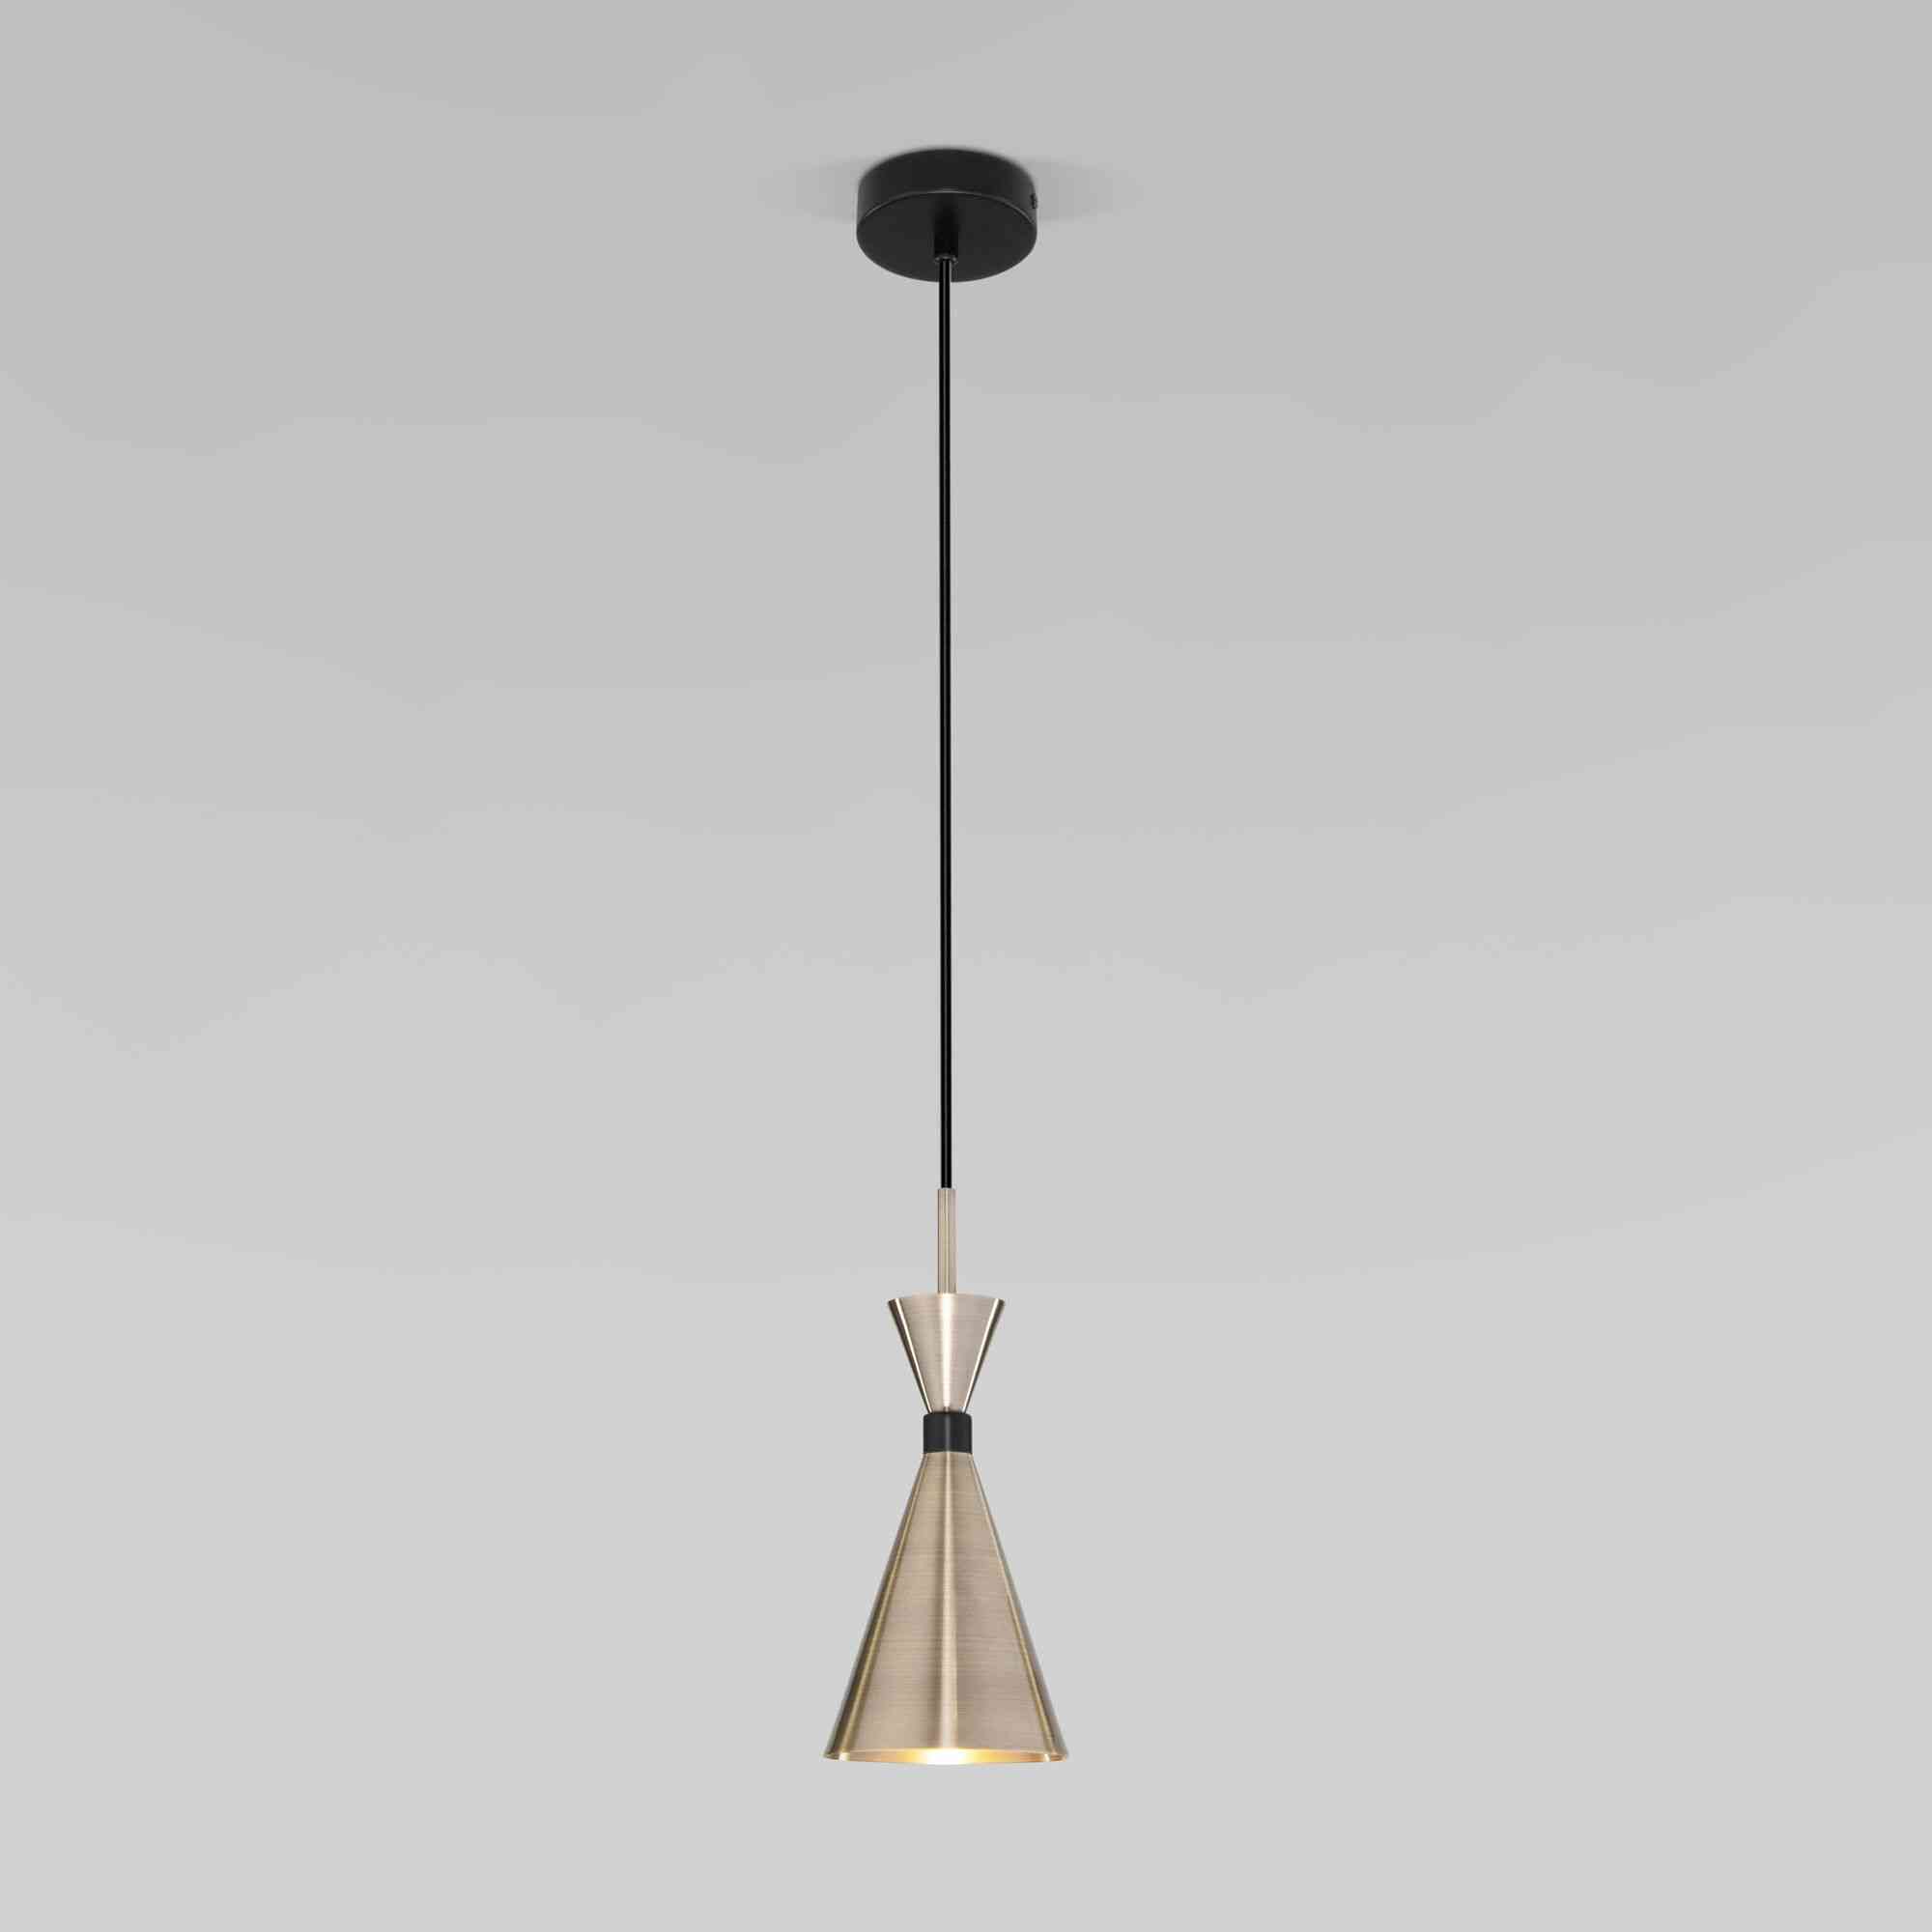 Подвесной светильник оригинальной формы Bogate’s Glustin 316